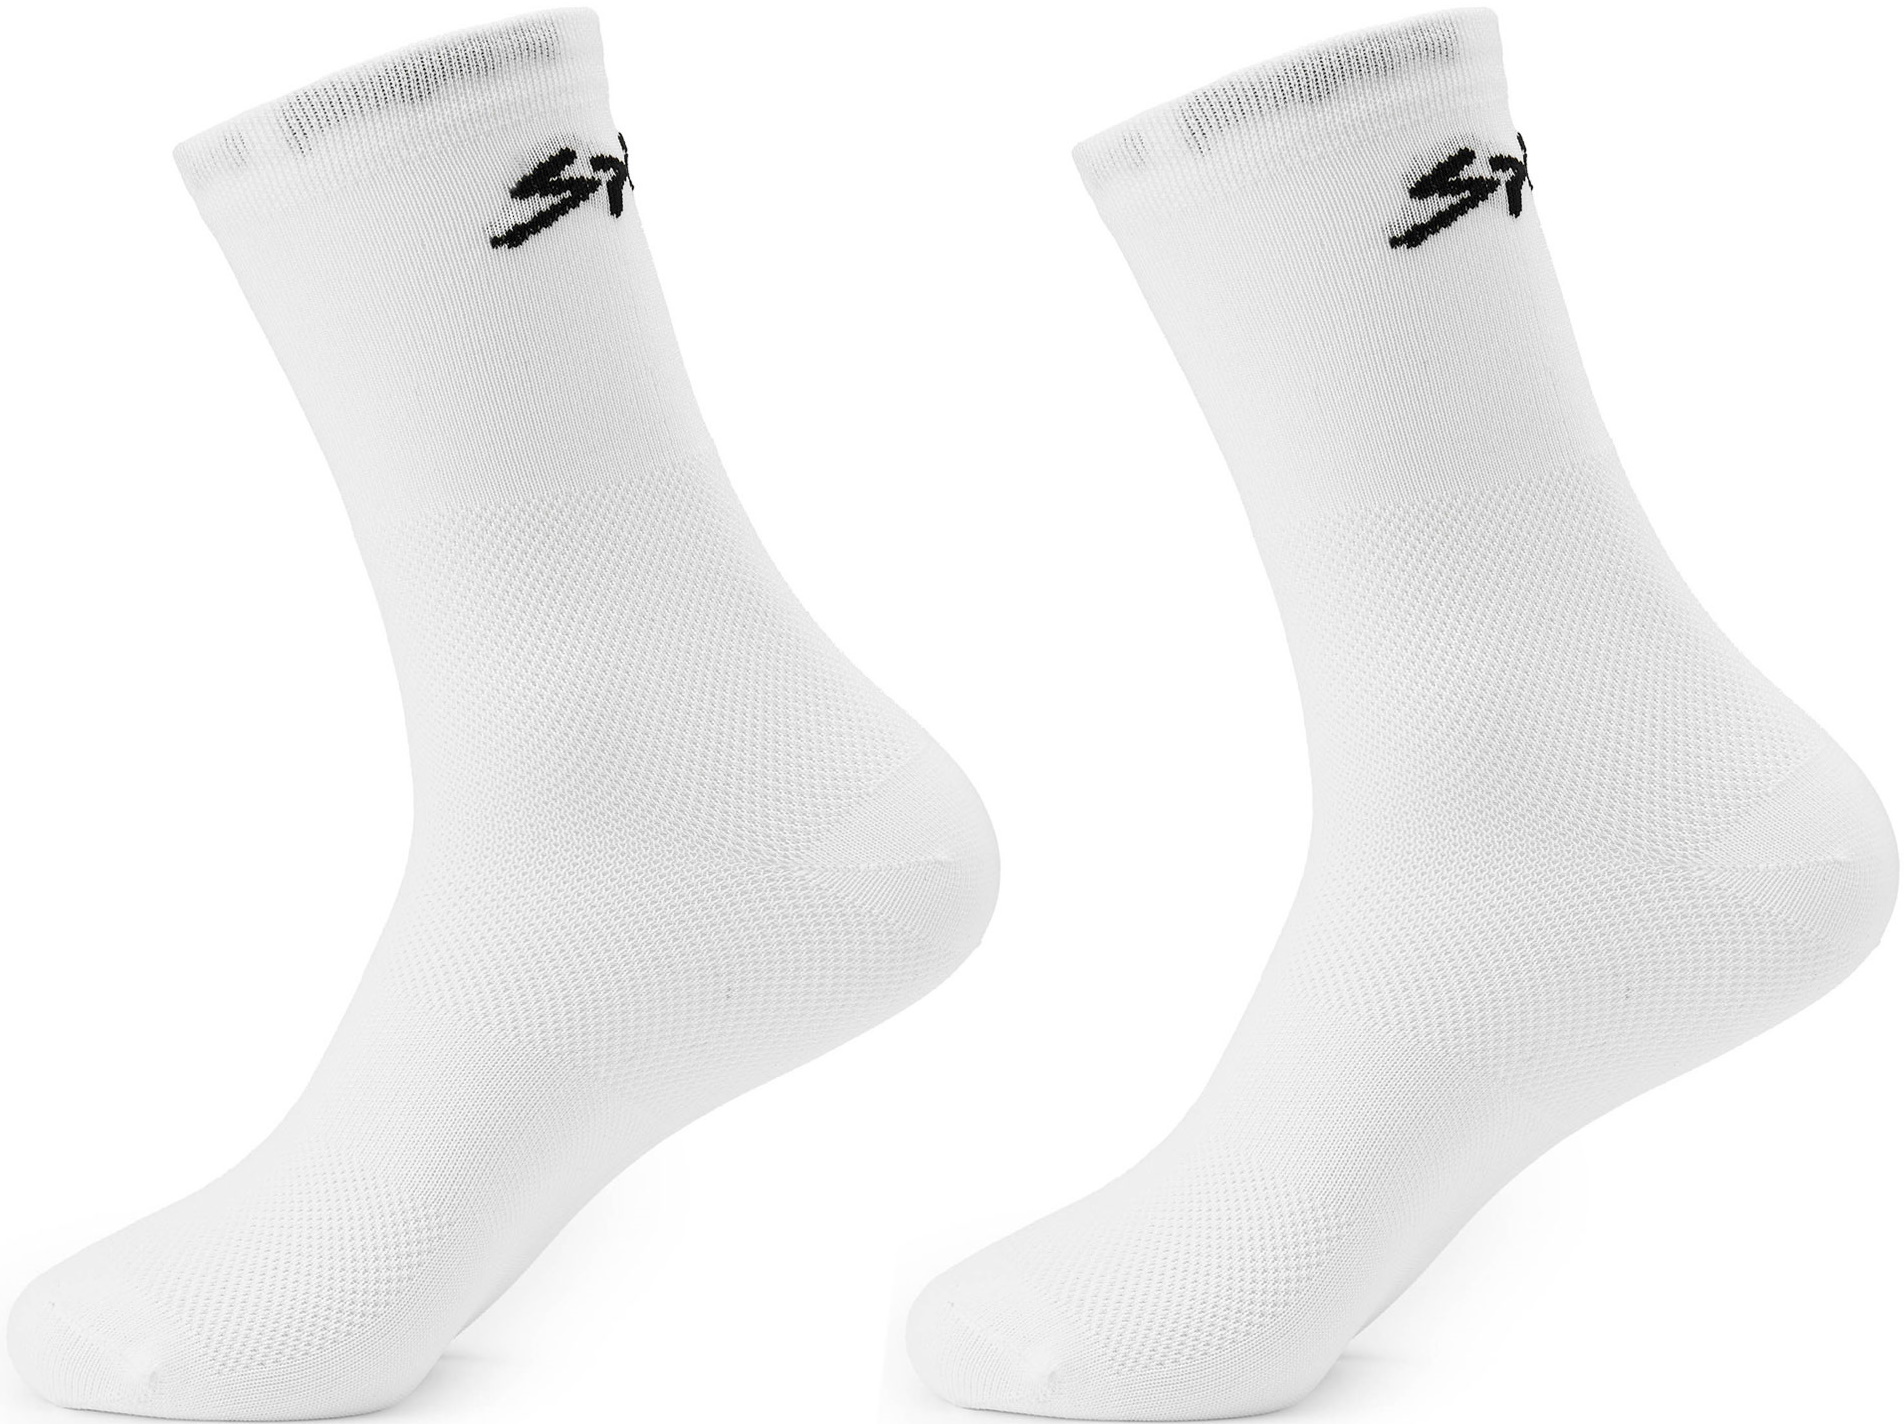 Шкарпетки Spiuk Anatomic білі р 44-47  (2 пари в упаковці)